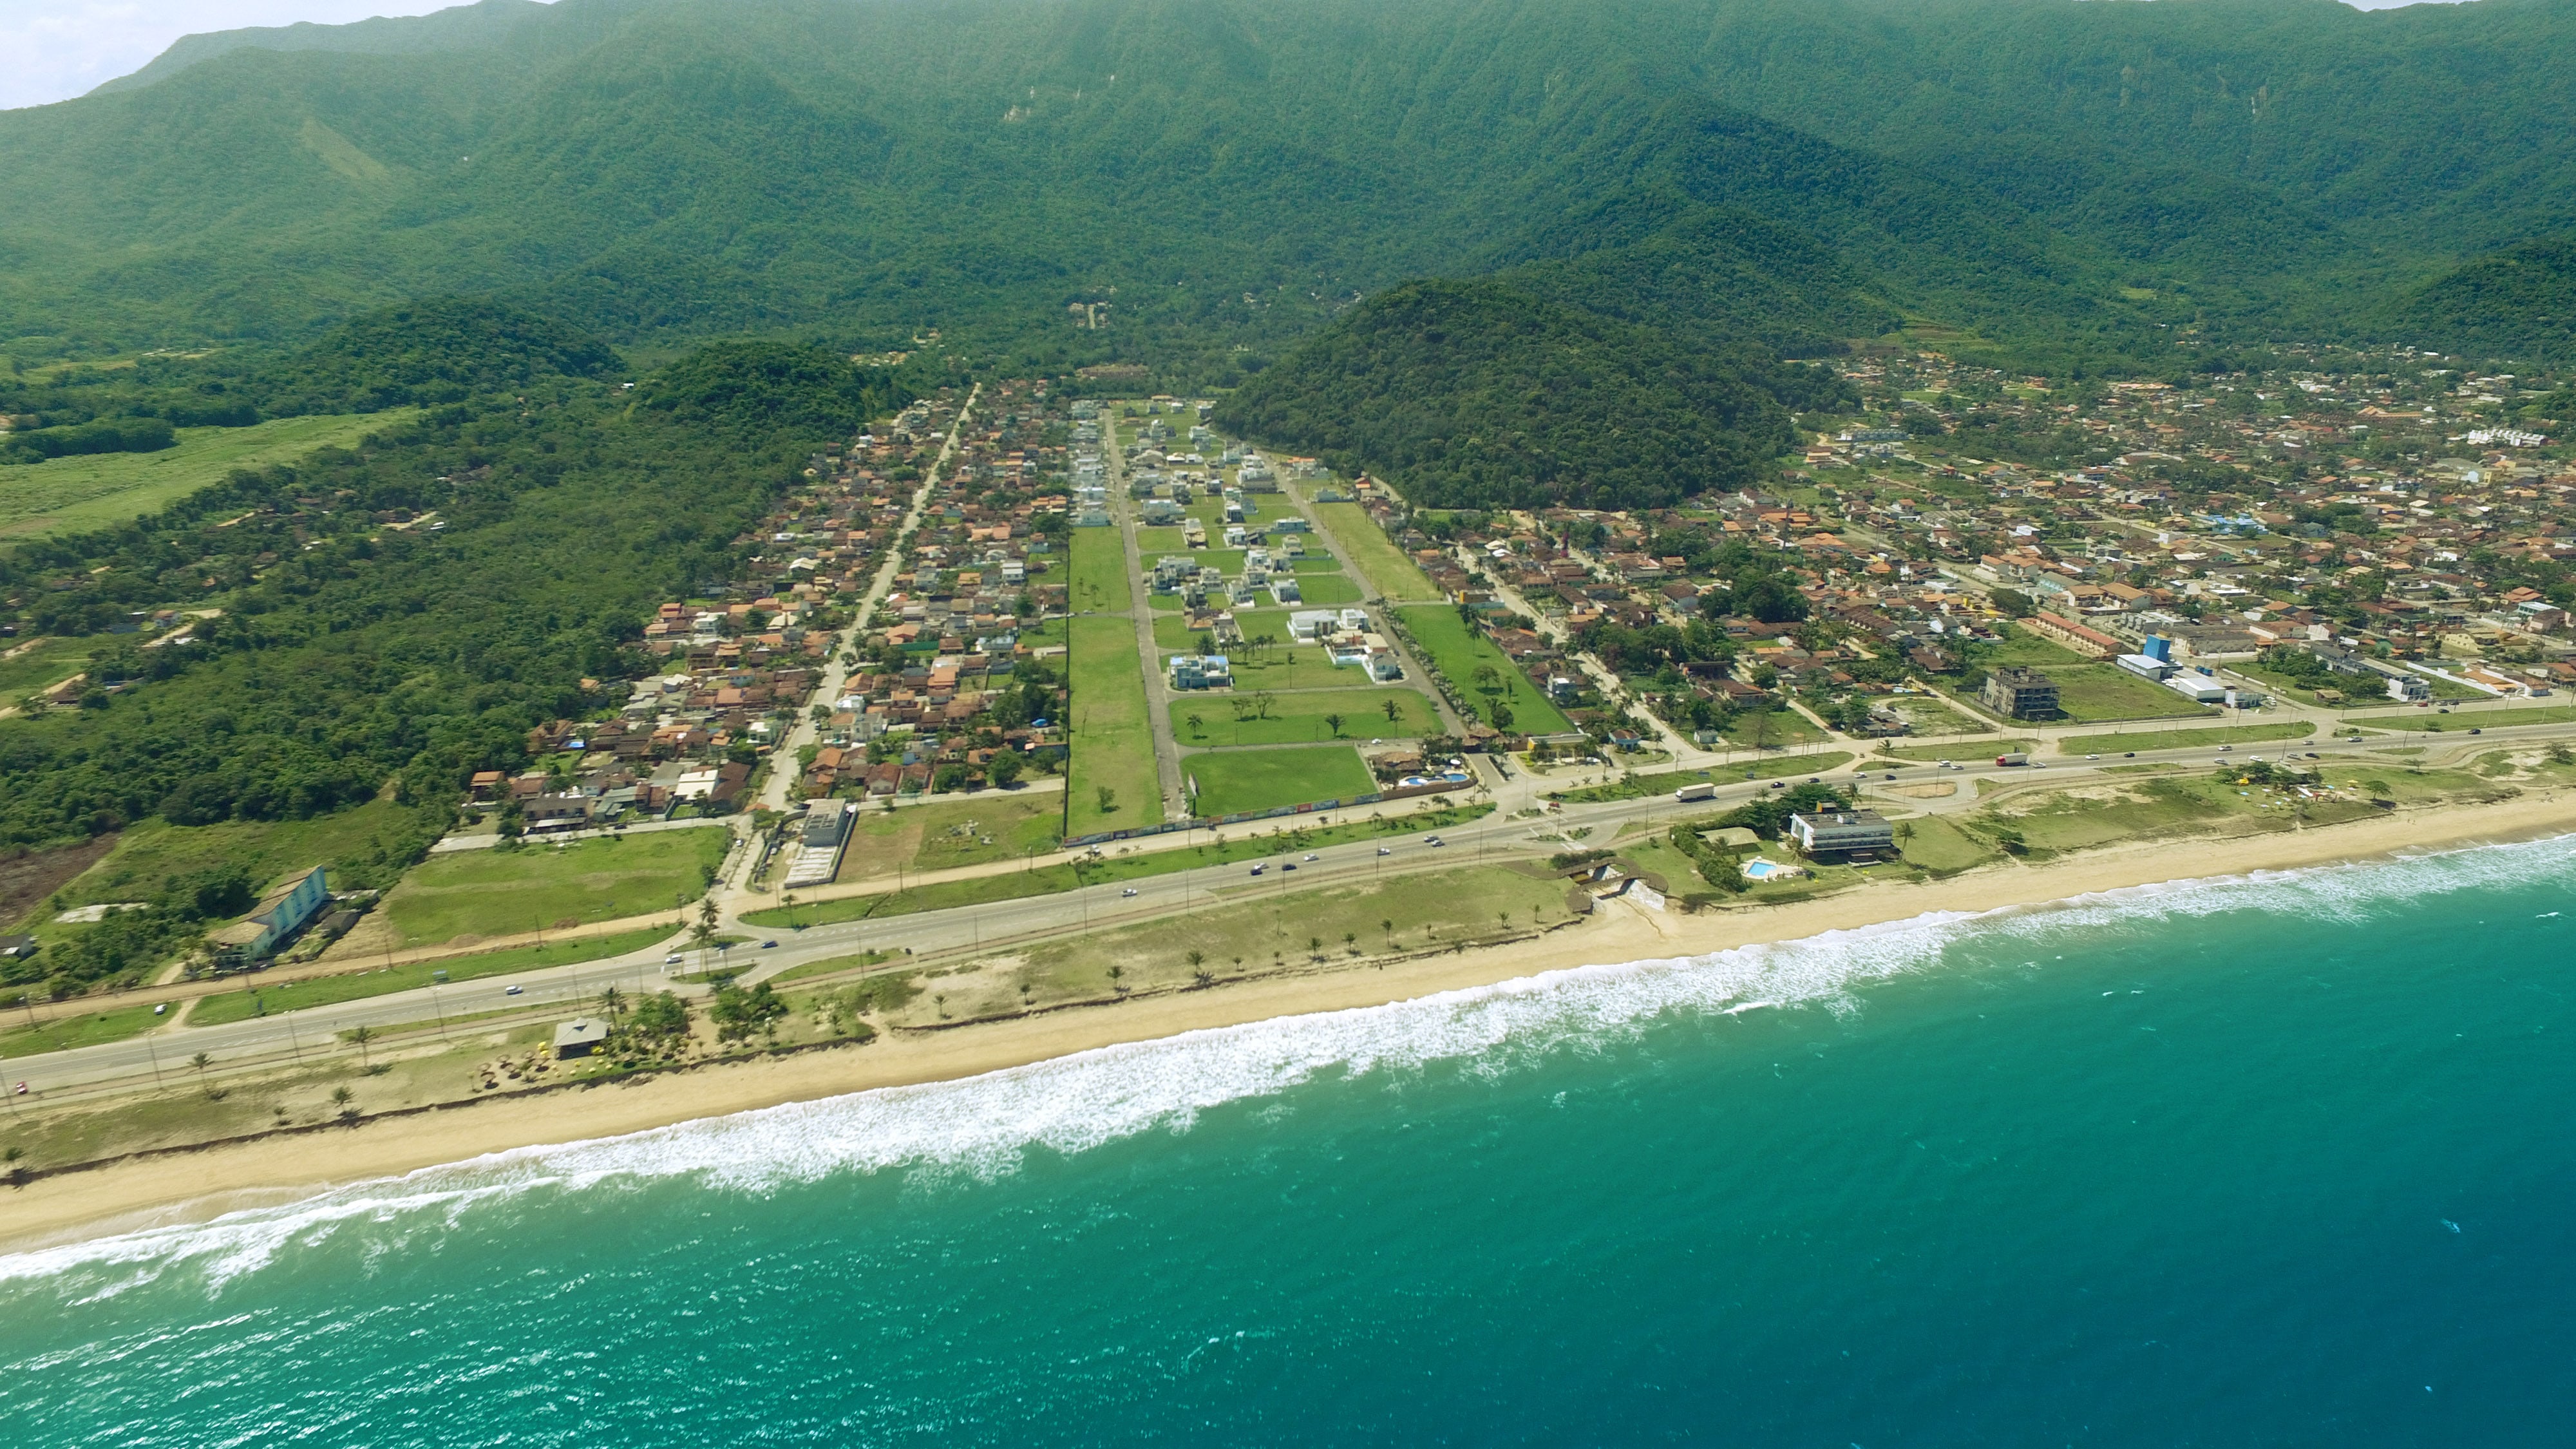 Costa Nova Residencial Club, loteamento fechado de frente para a praia Massaguaçu Caraguatatuba